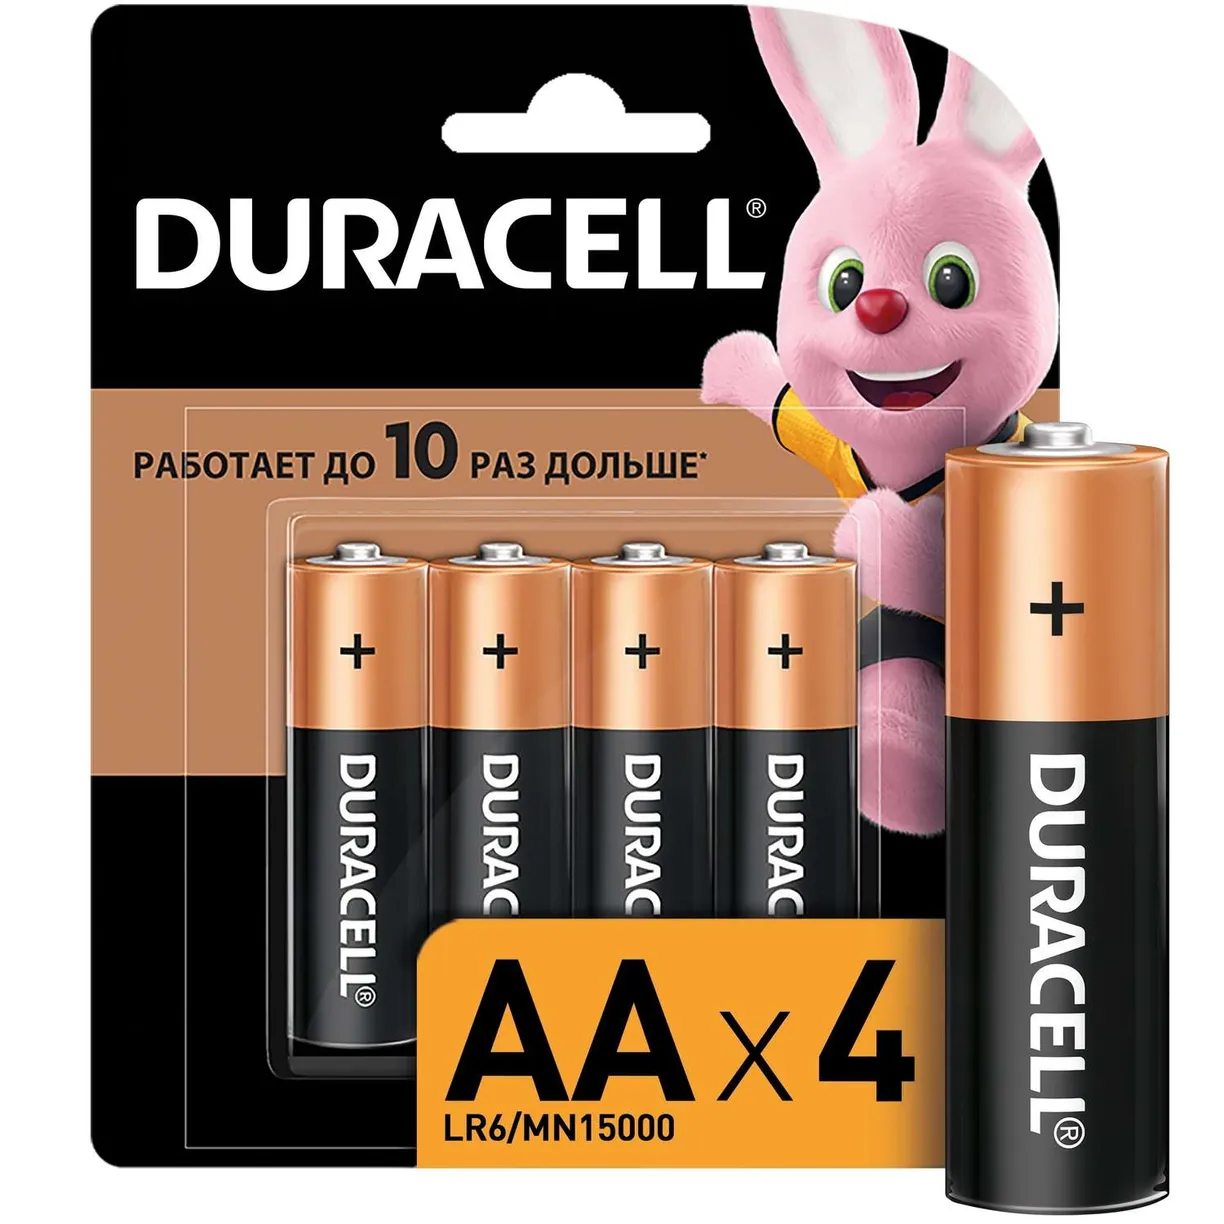 Батарейки Duracell Basic AA, 4 шт. батарейки duracell optimum aaa 8 шт